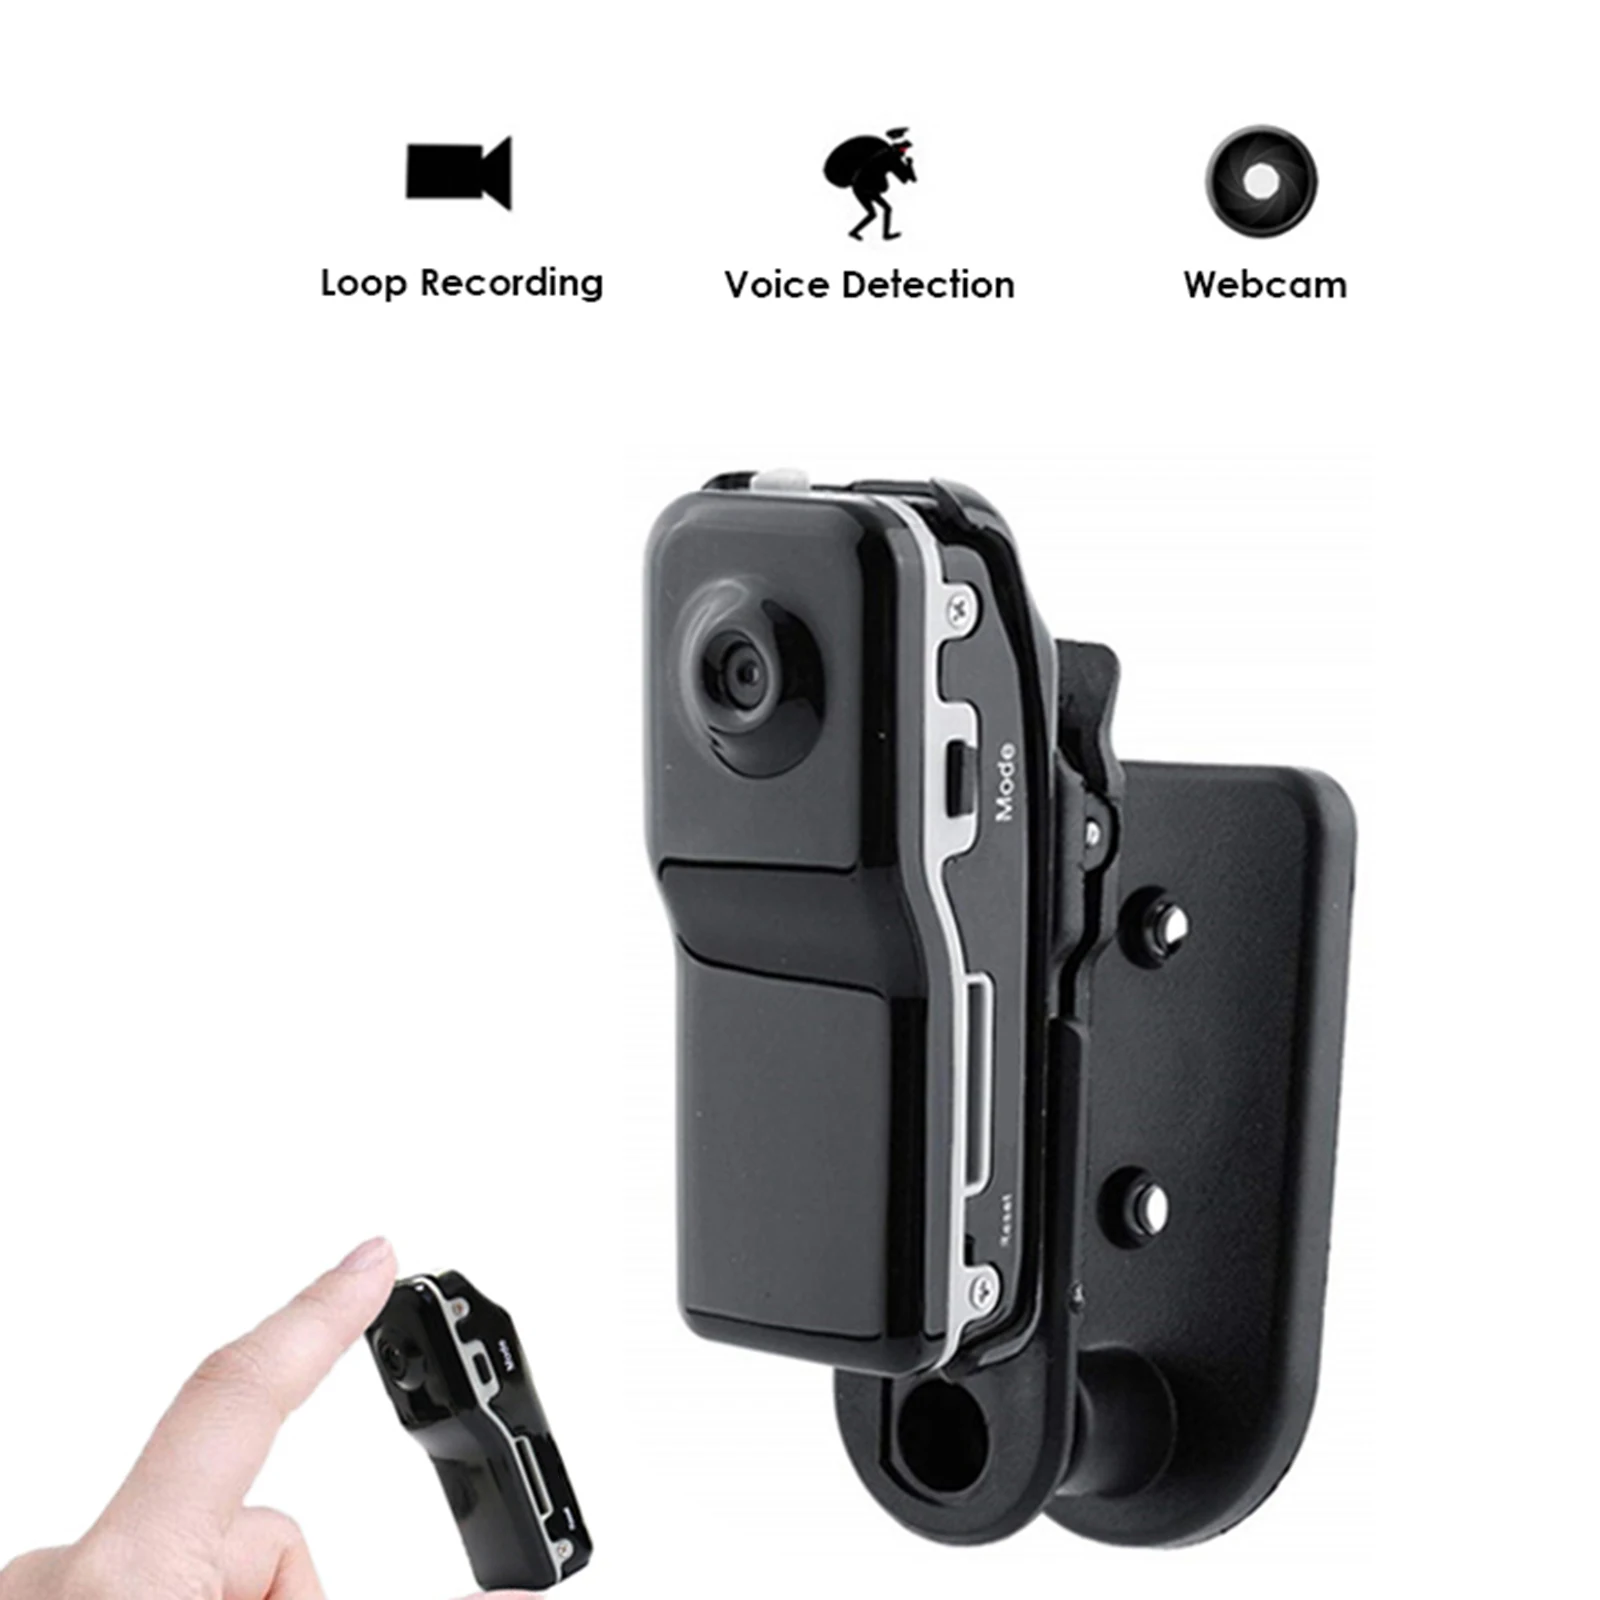 Mini HD Spy Kamera Versteckte Tragbare Sicherheit Camcorder Video Recorder DVR 